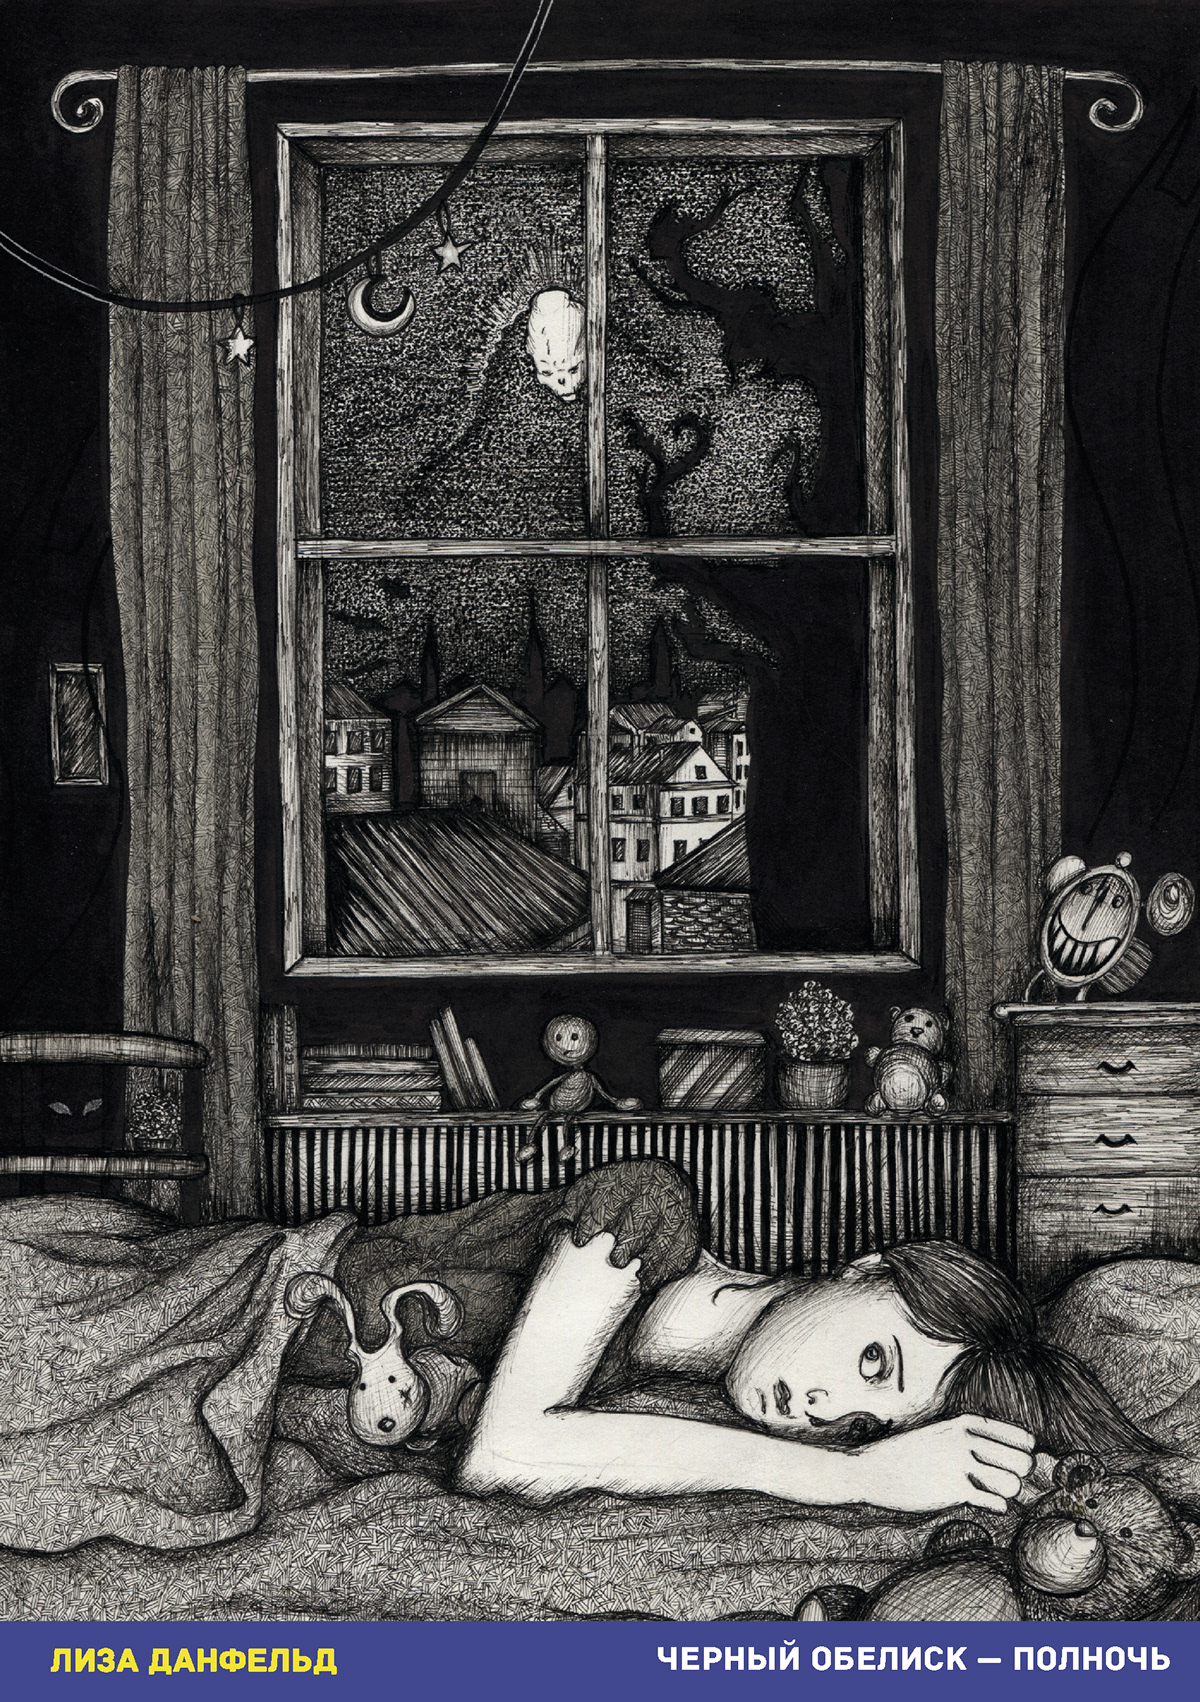 Тайна хозяйки часов текст. Иллюстрации Лизы Данфельд КИШ. Полночь иллюстрация.